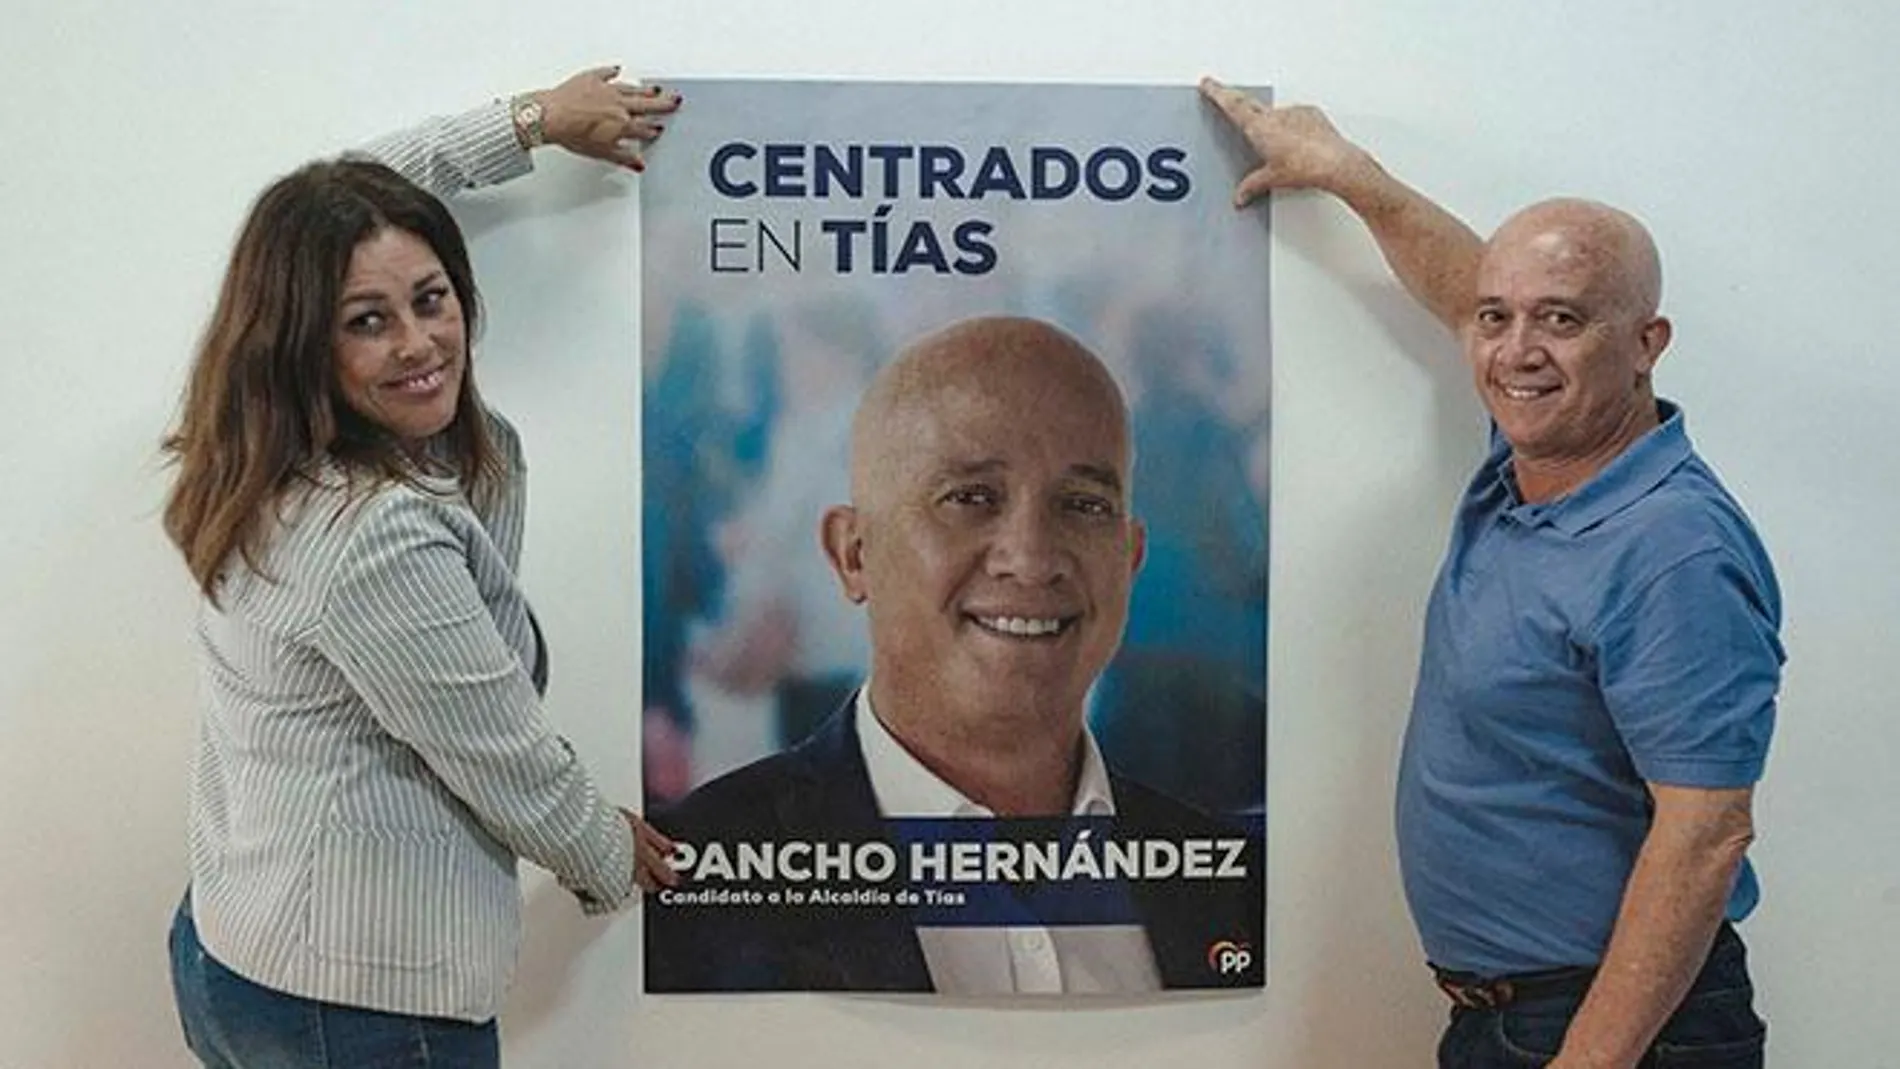 “Centrados en Tías” es el eslogan de Pancho Hernández para el 26M, candidato del PP en el municipio de Tías, ubicado en Lanzarote